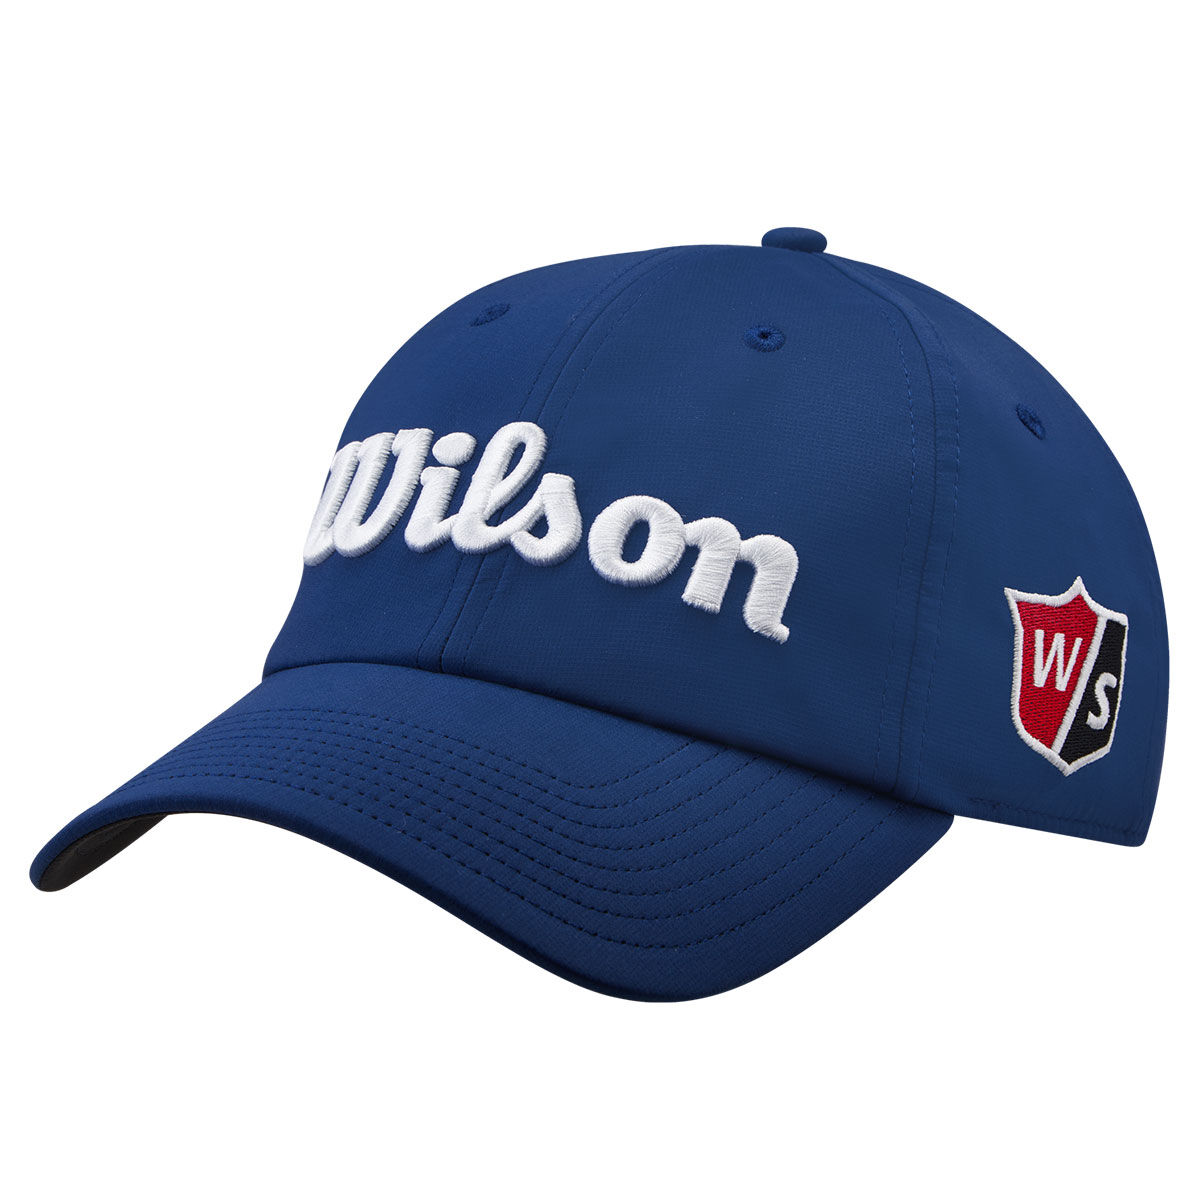 Wilson Men's Pro Tour Golf Cap, Mens, Navy/white, One size | American Golf von Wilson